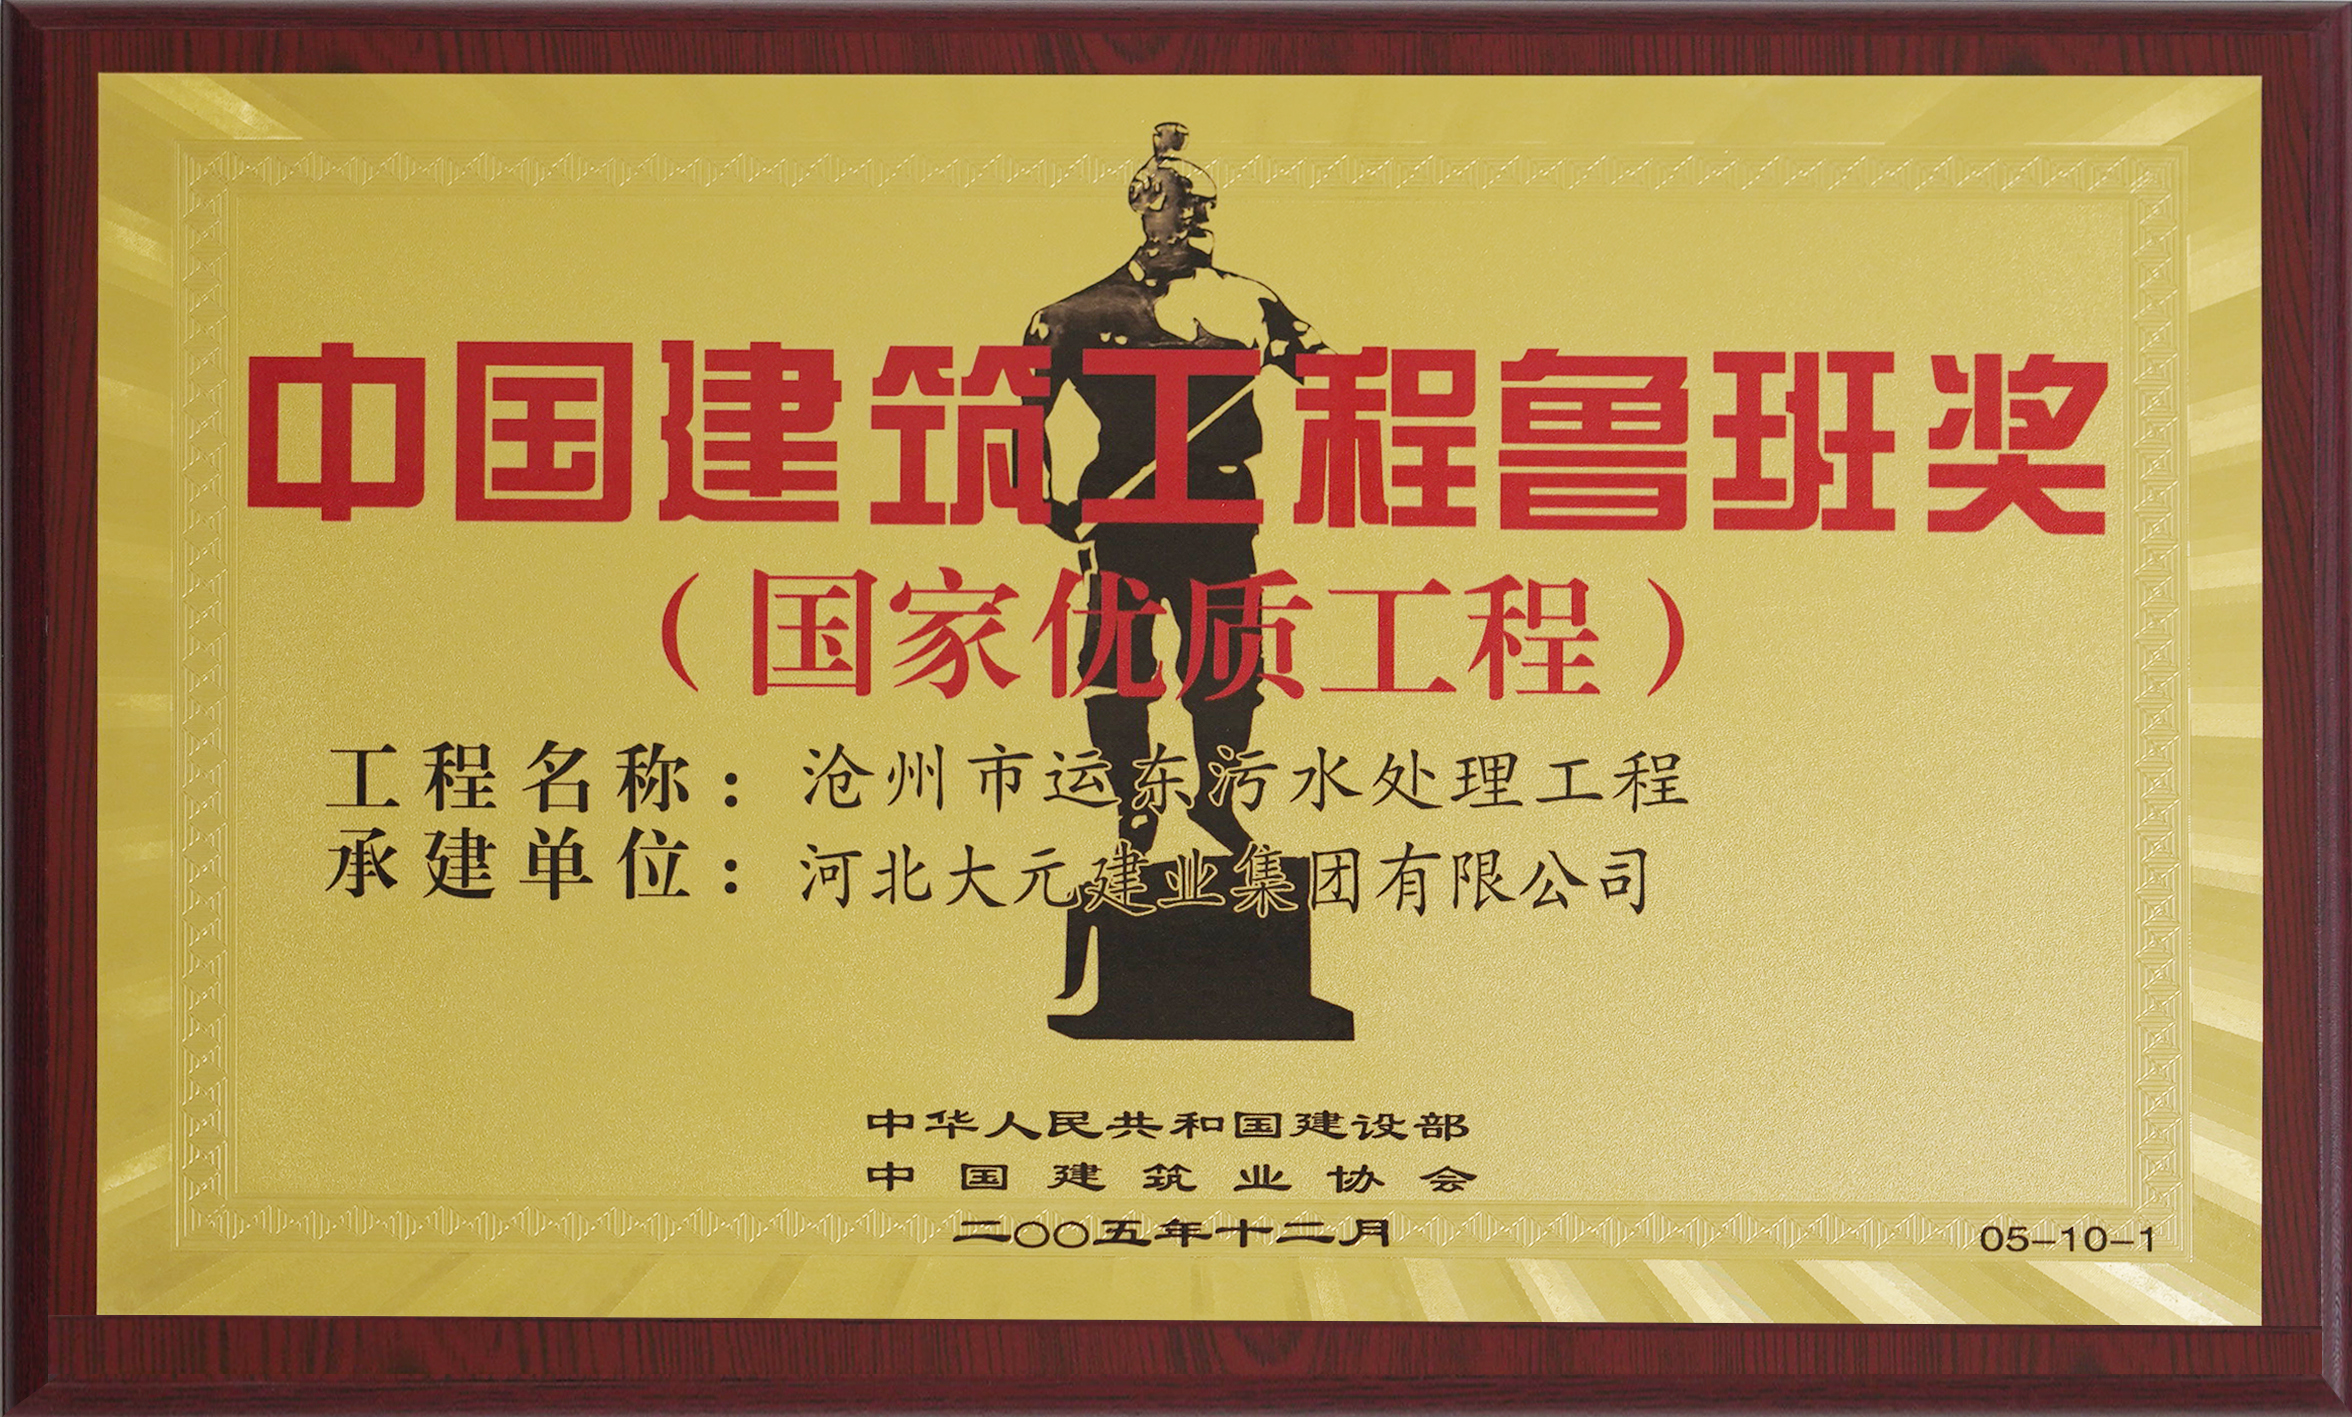 中国建筑工程鲁班奖 (2)